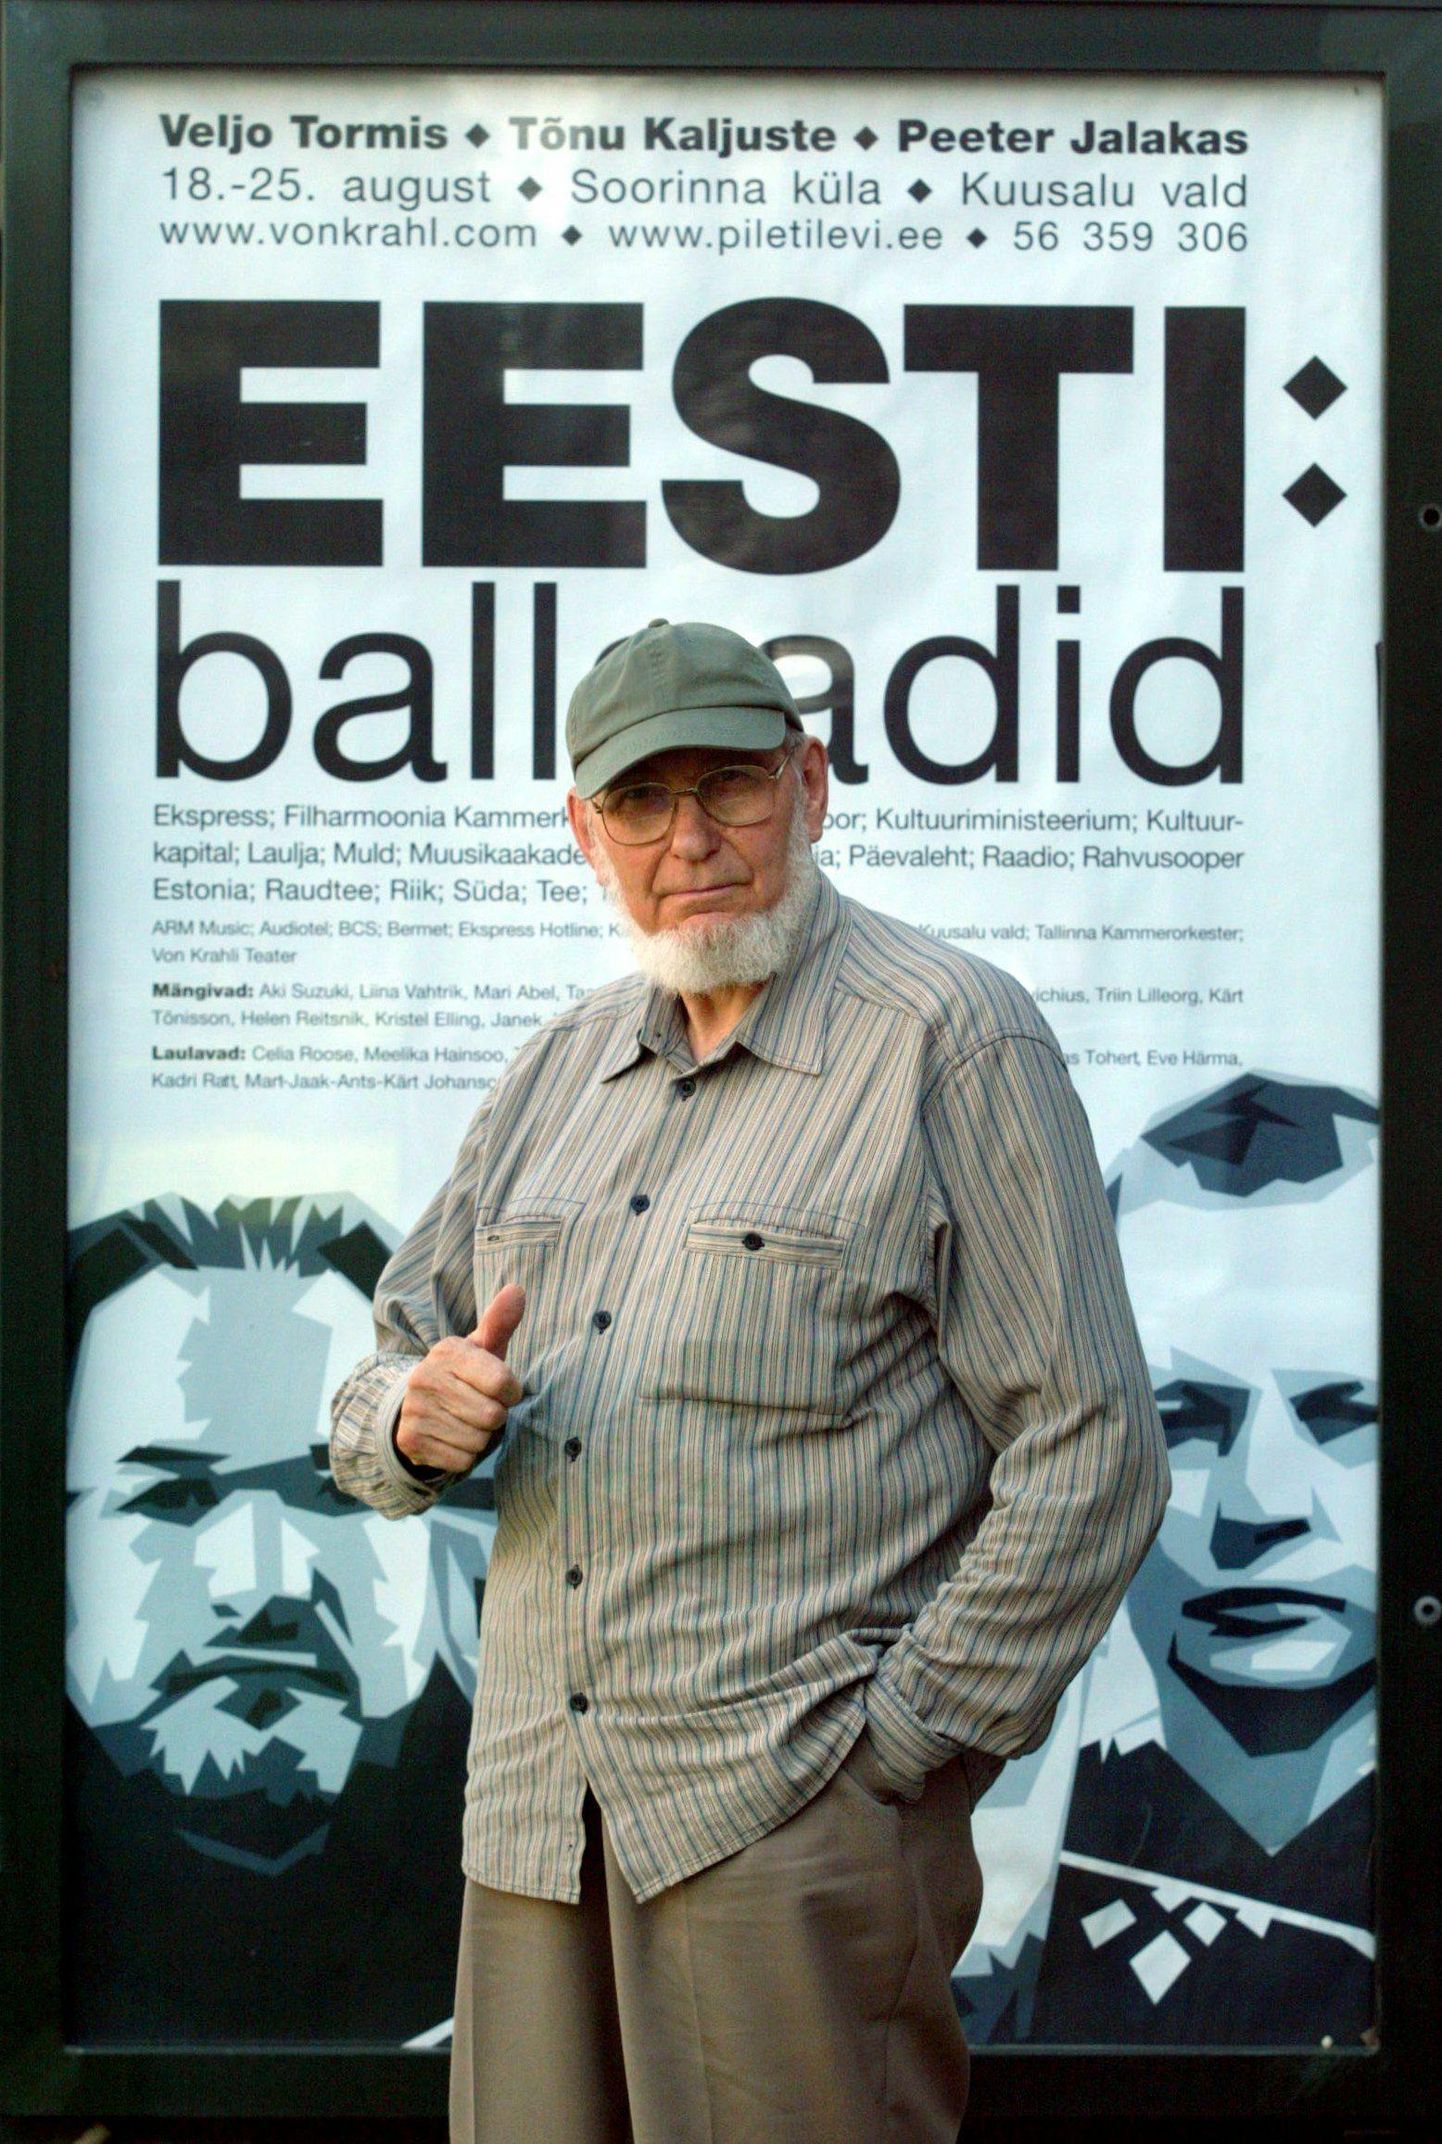 Veljo Tormis «Eesti ballaadide» plakati ees. Aasta on 2004.